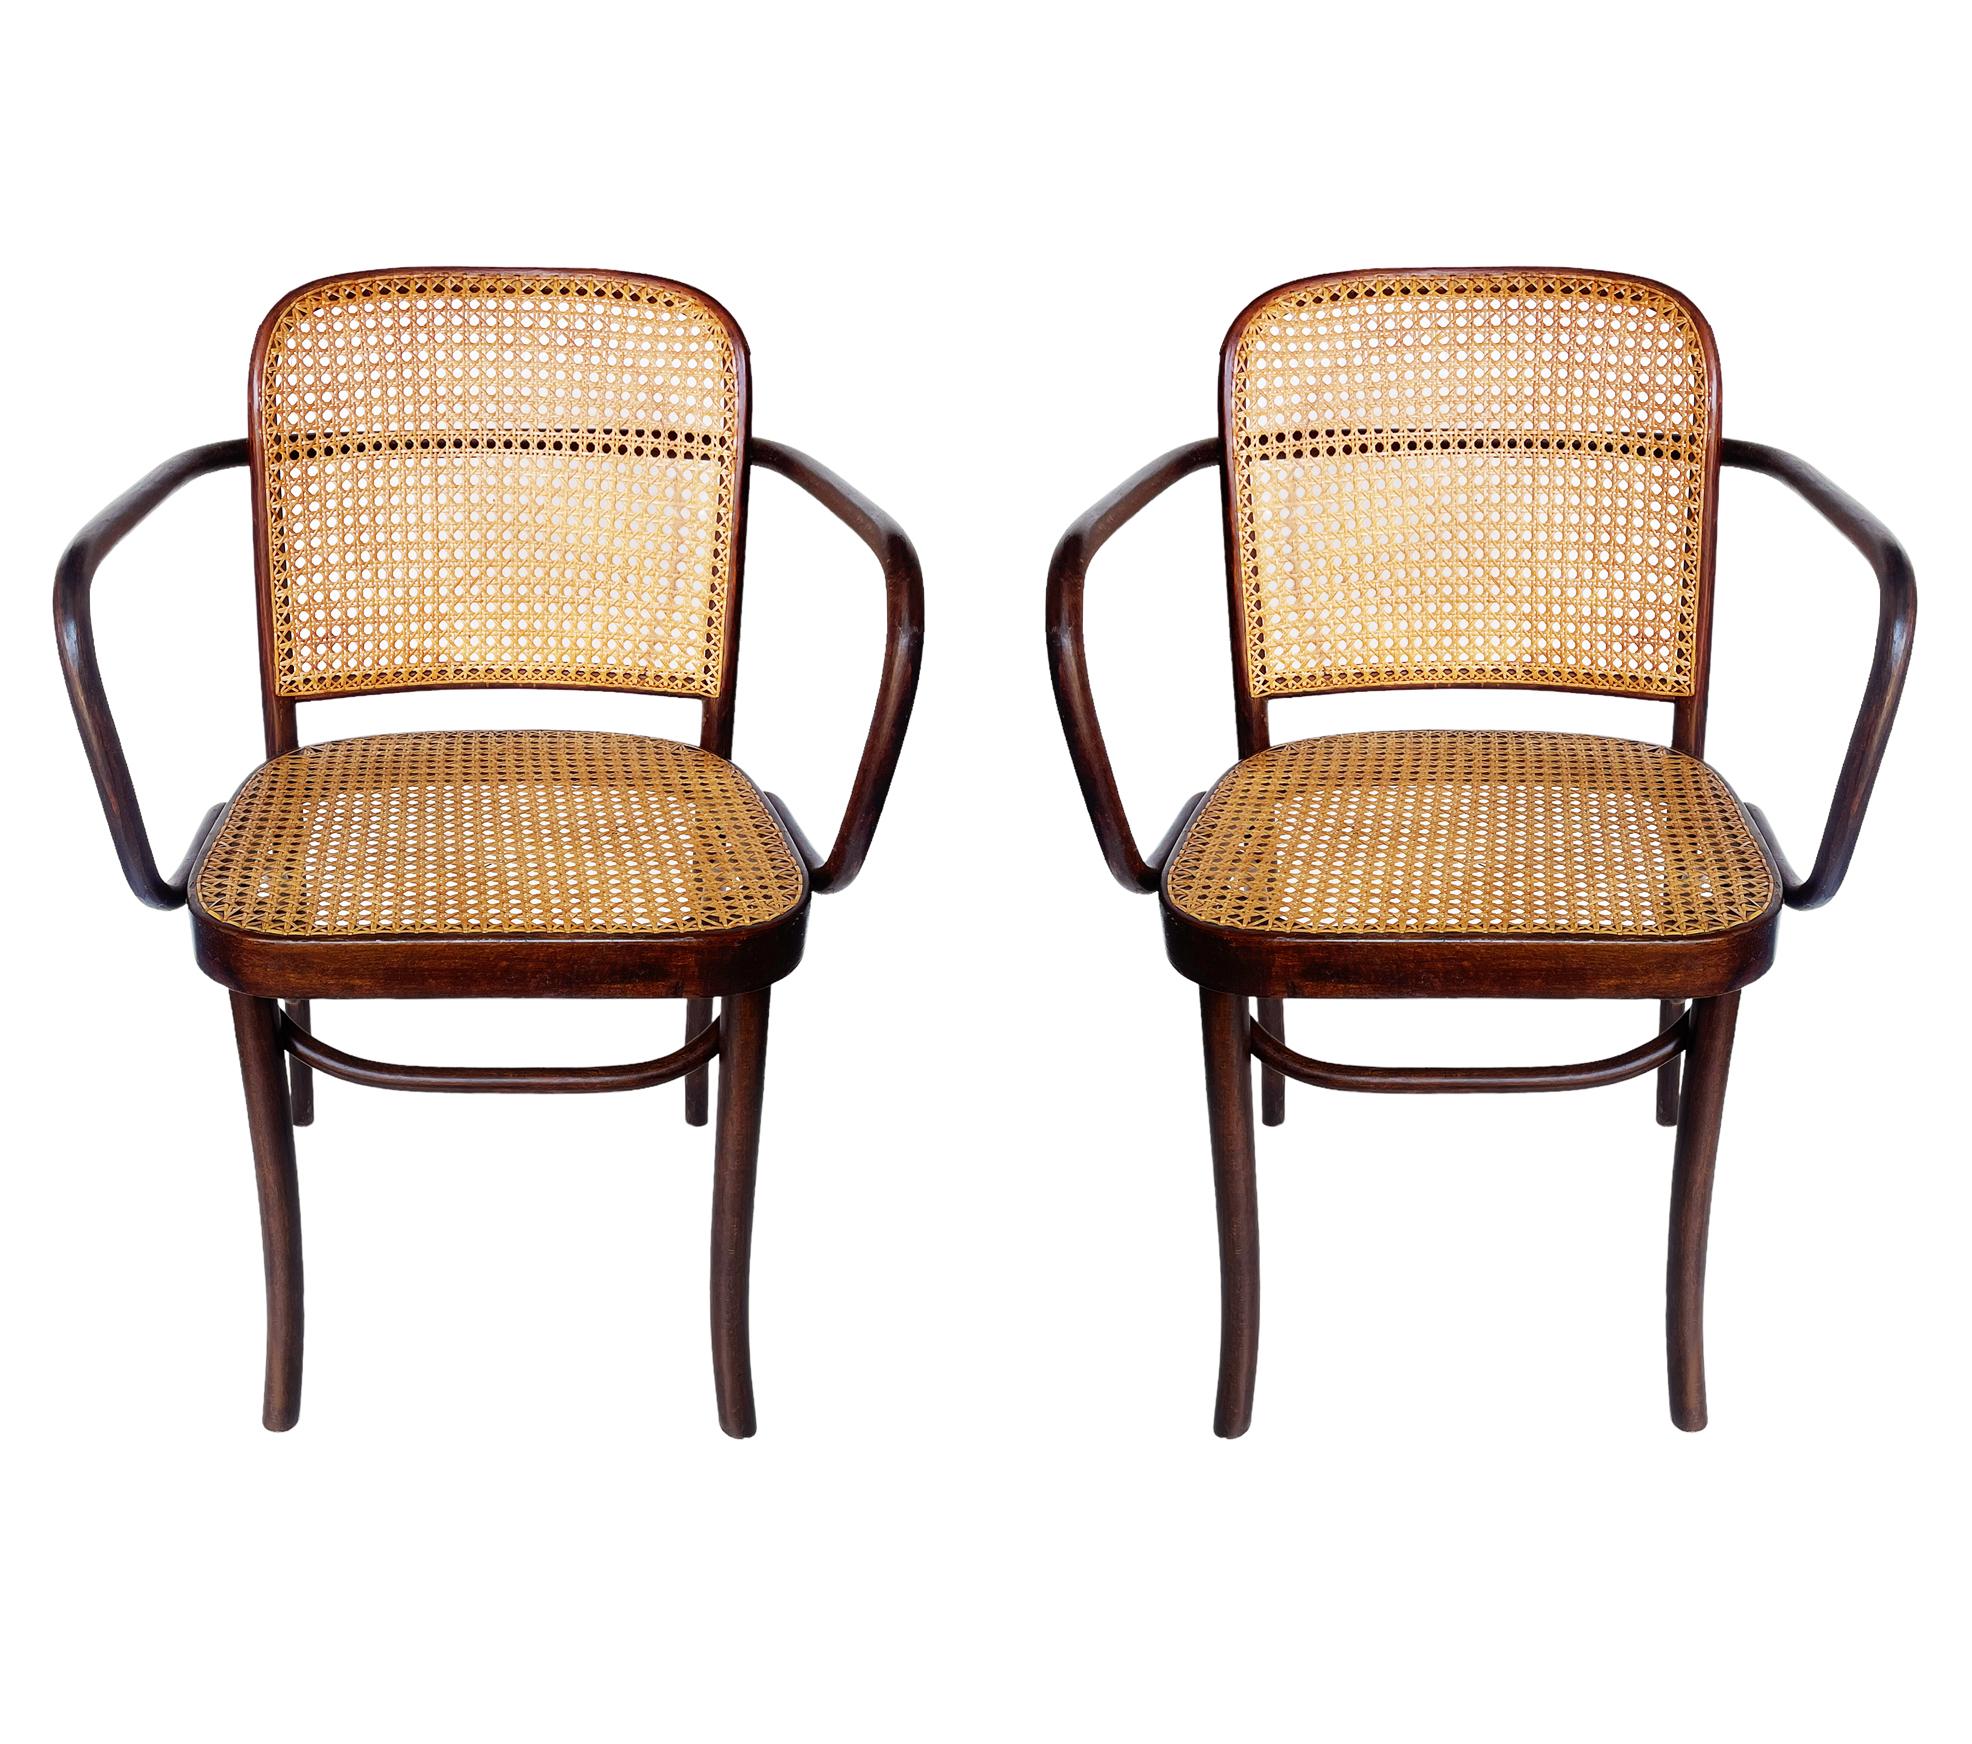 Ensemble complet de quatre chaises de Prague en bois courbé de Josef Hoffmann, en bouleau teinté foncé. Le cannage a très probablement été réalisé à un moment donné et il est très beau. Très bel ensemble de chaises, prêtes à l'emploi. Fabriqué en